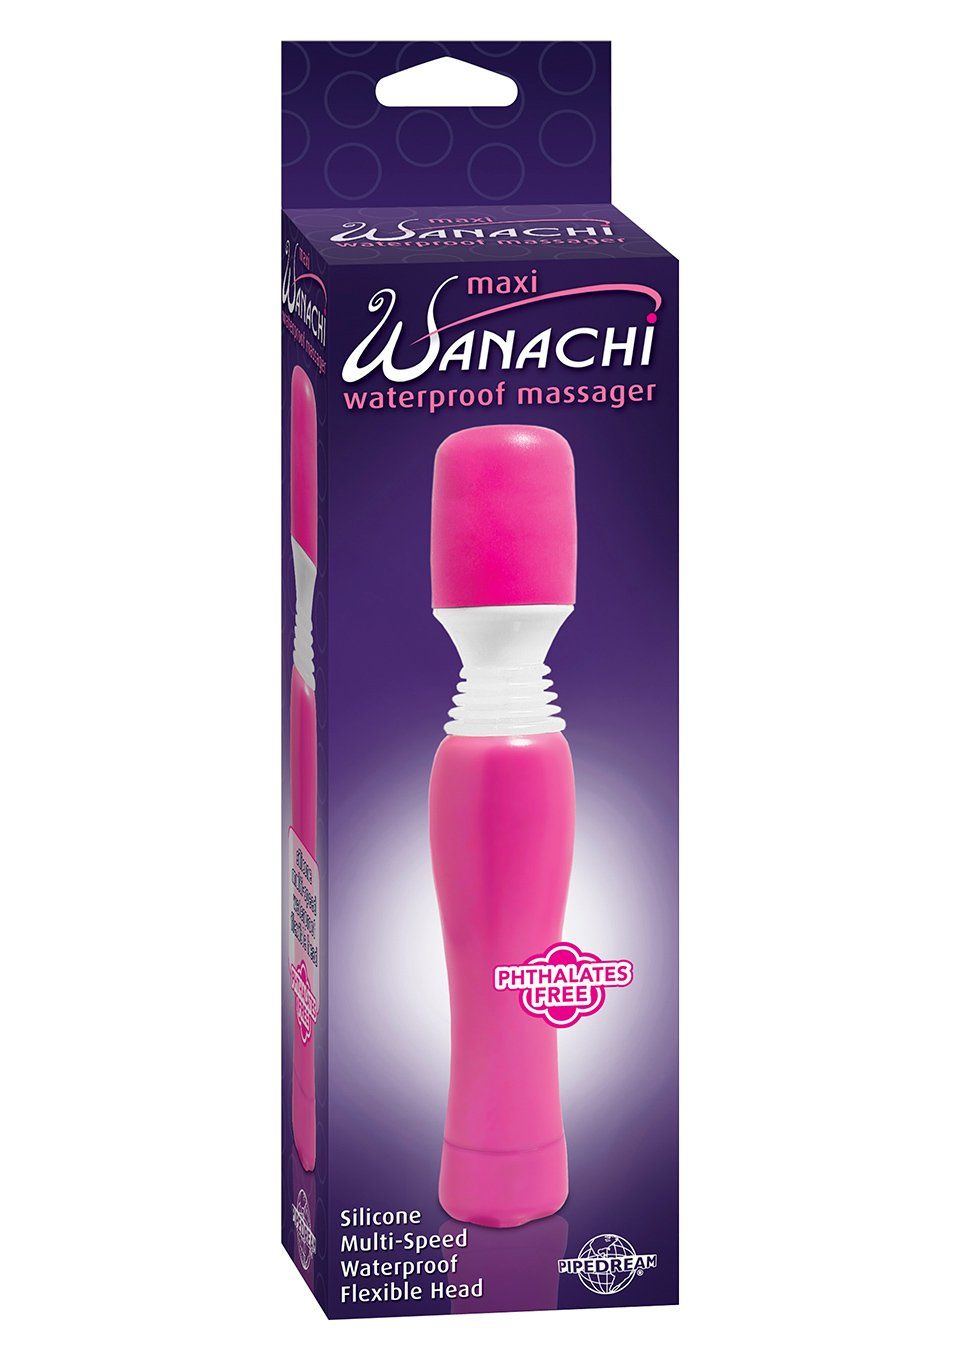 Wanachi rechargeable cordless wand vibrator massager